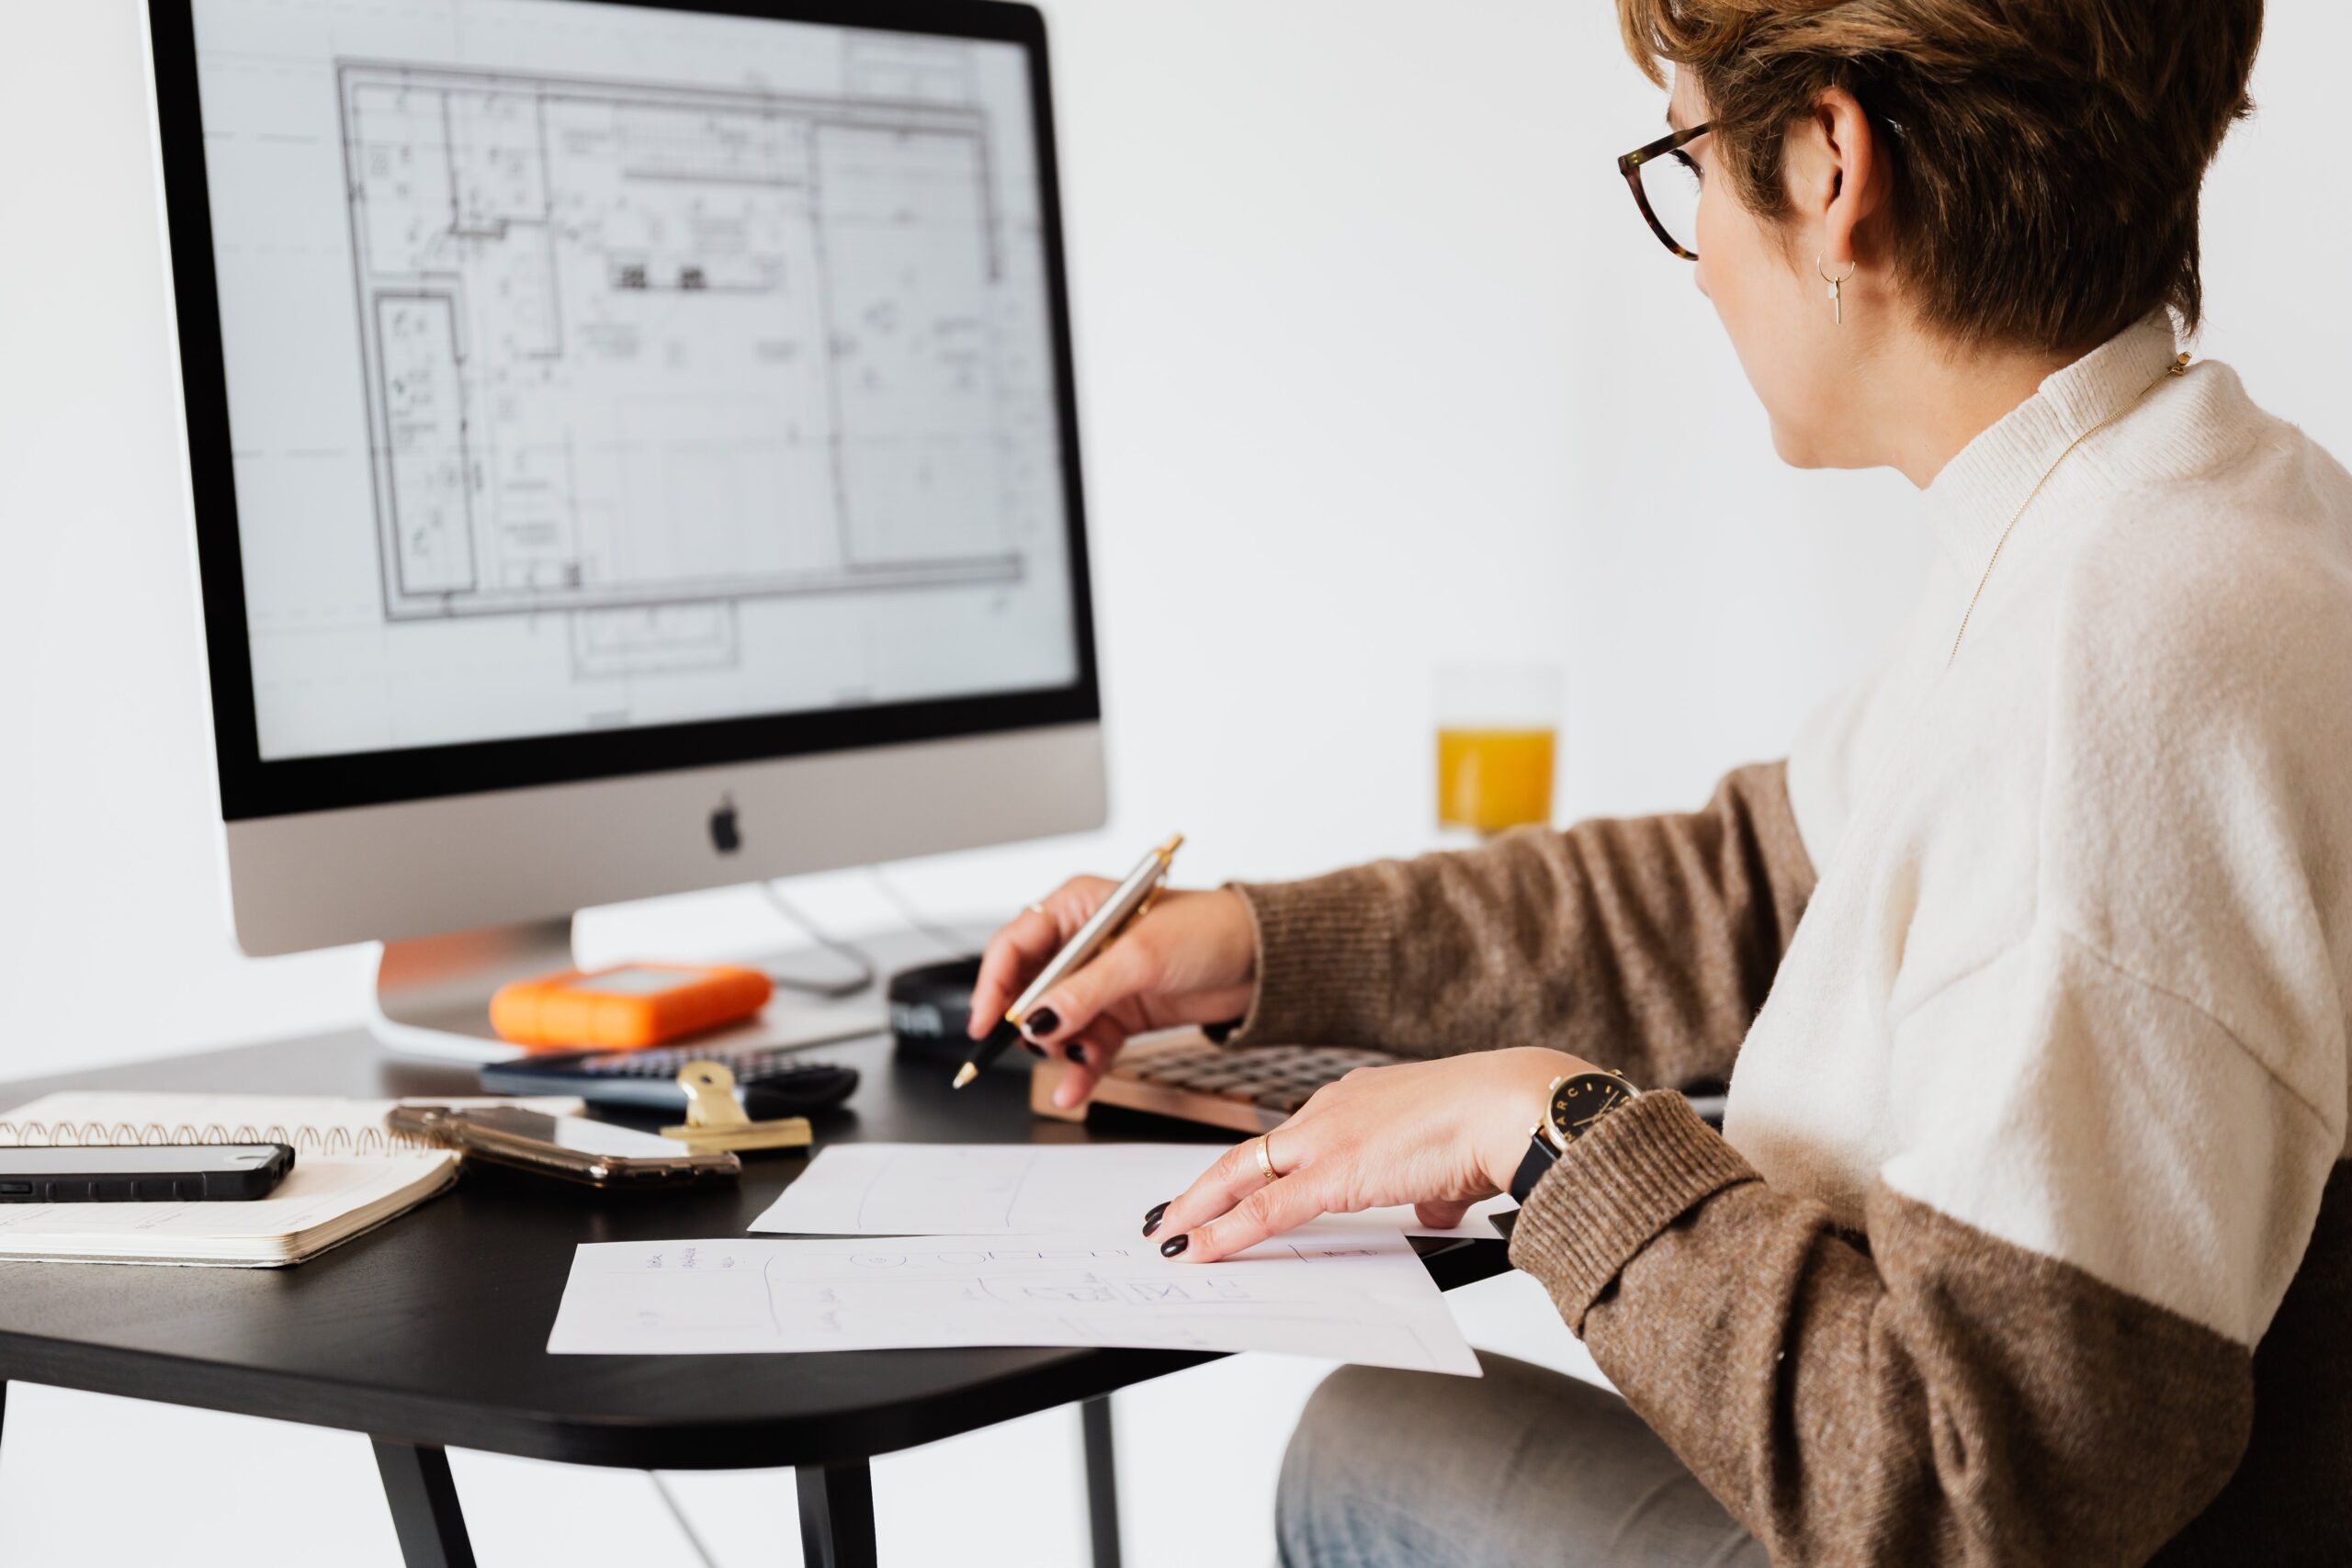 Profissional de Design de Interiores olhando planta de projeto no computador e com um papel e uma caneta na mão